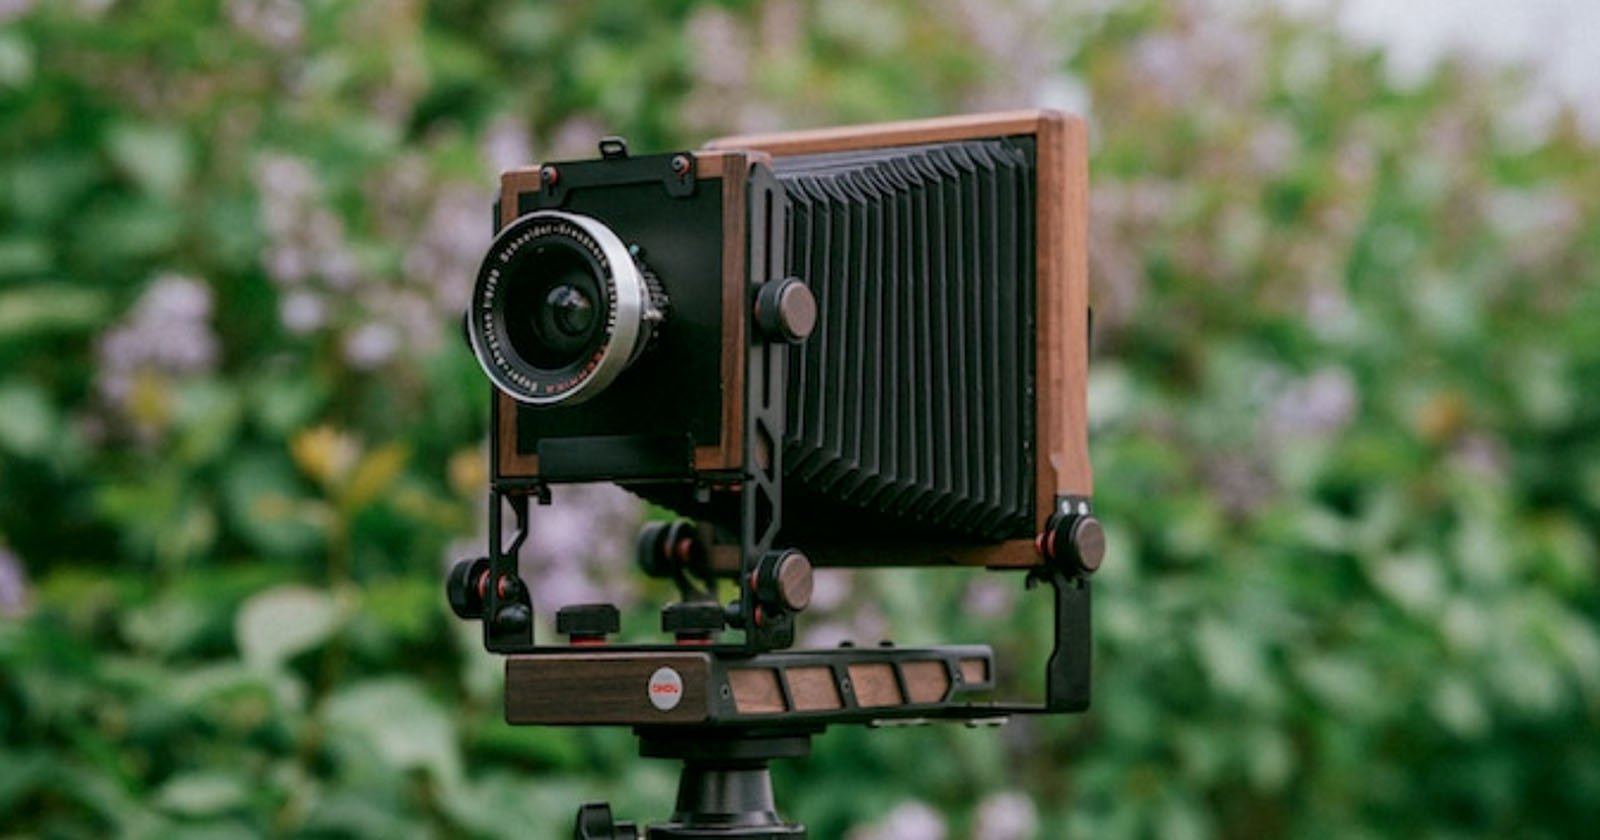  ondu eikan modular large format camera designed grow 